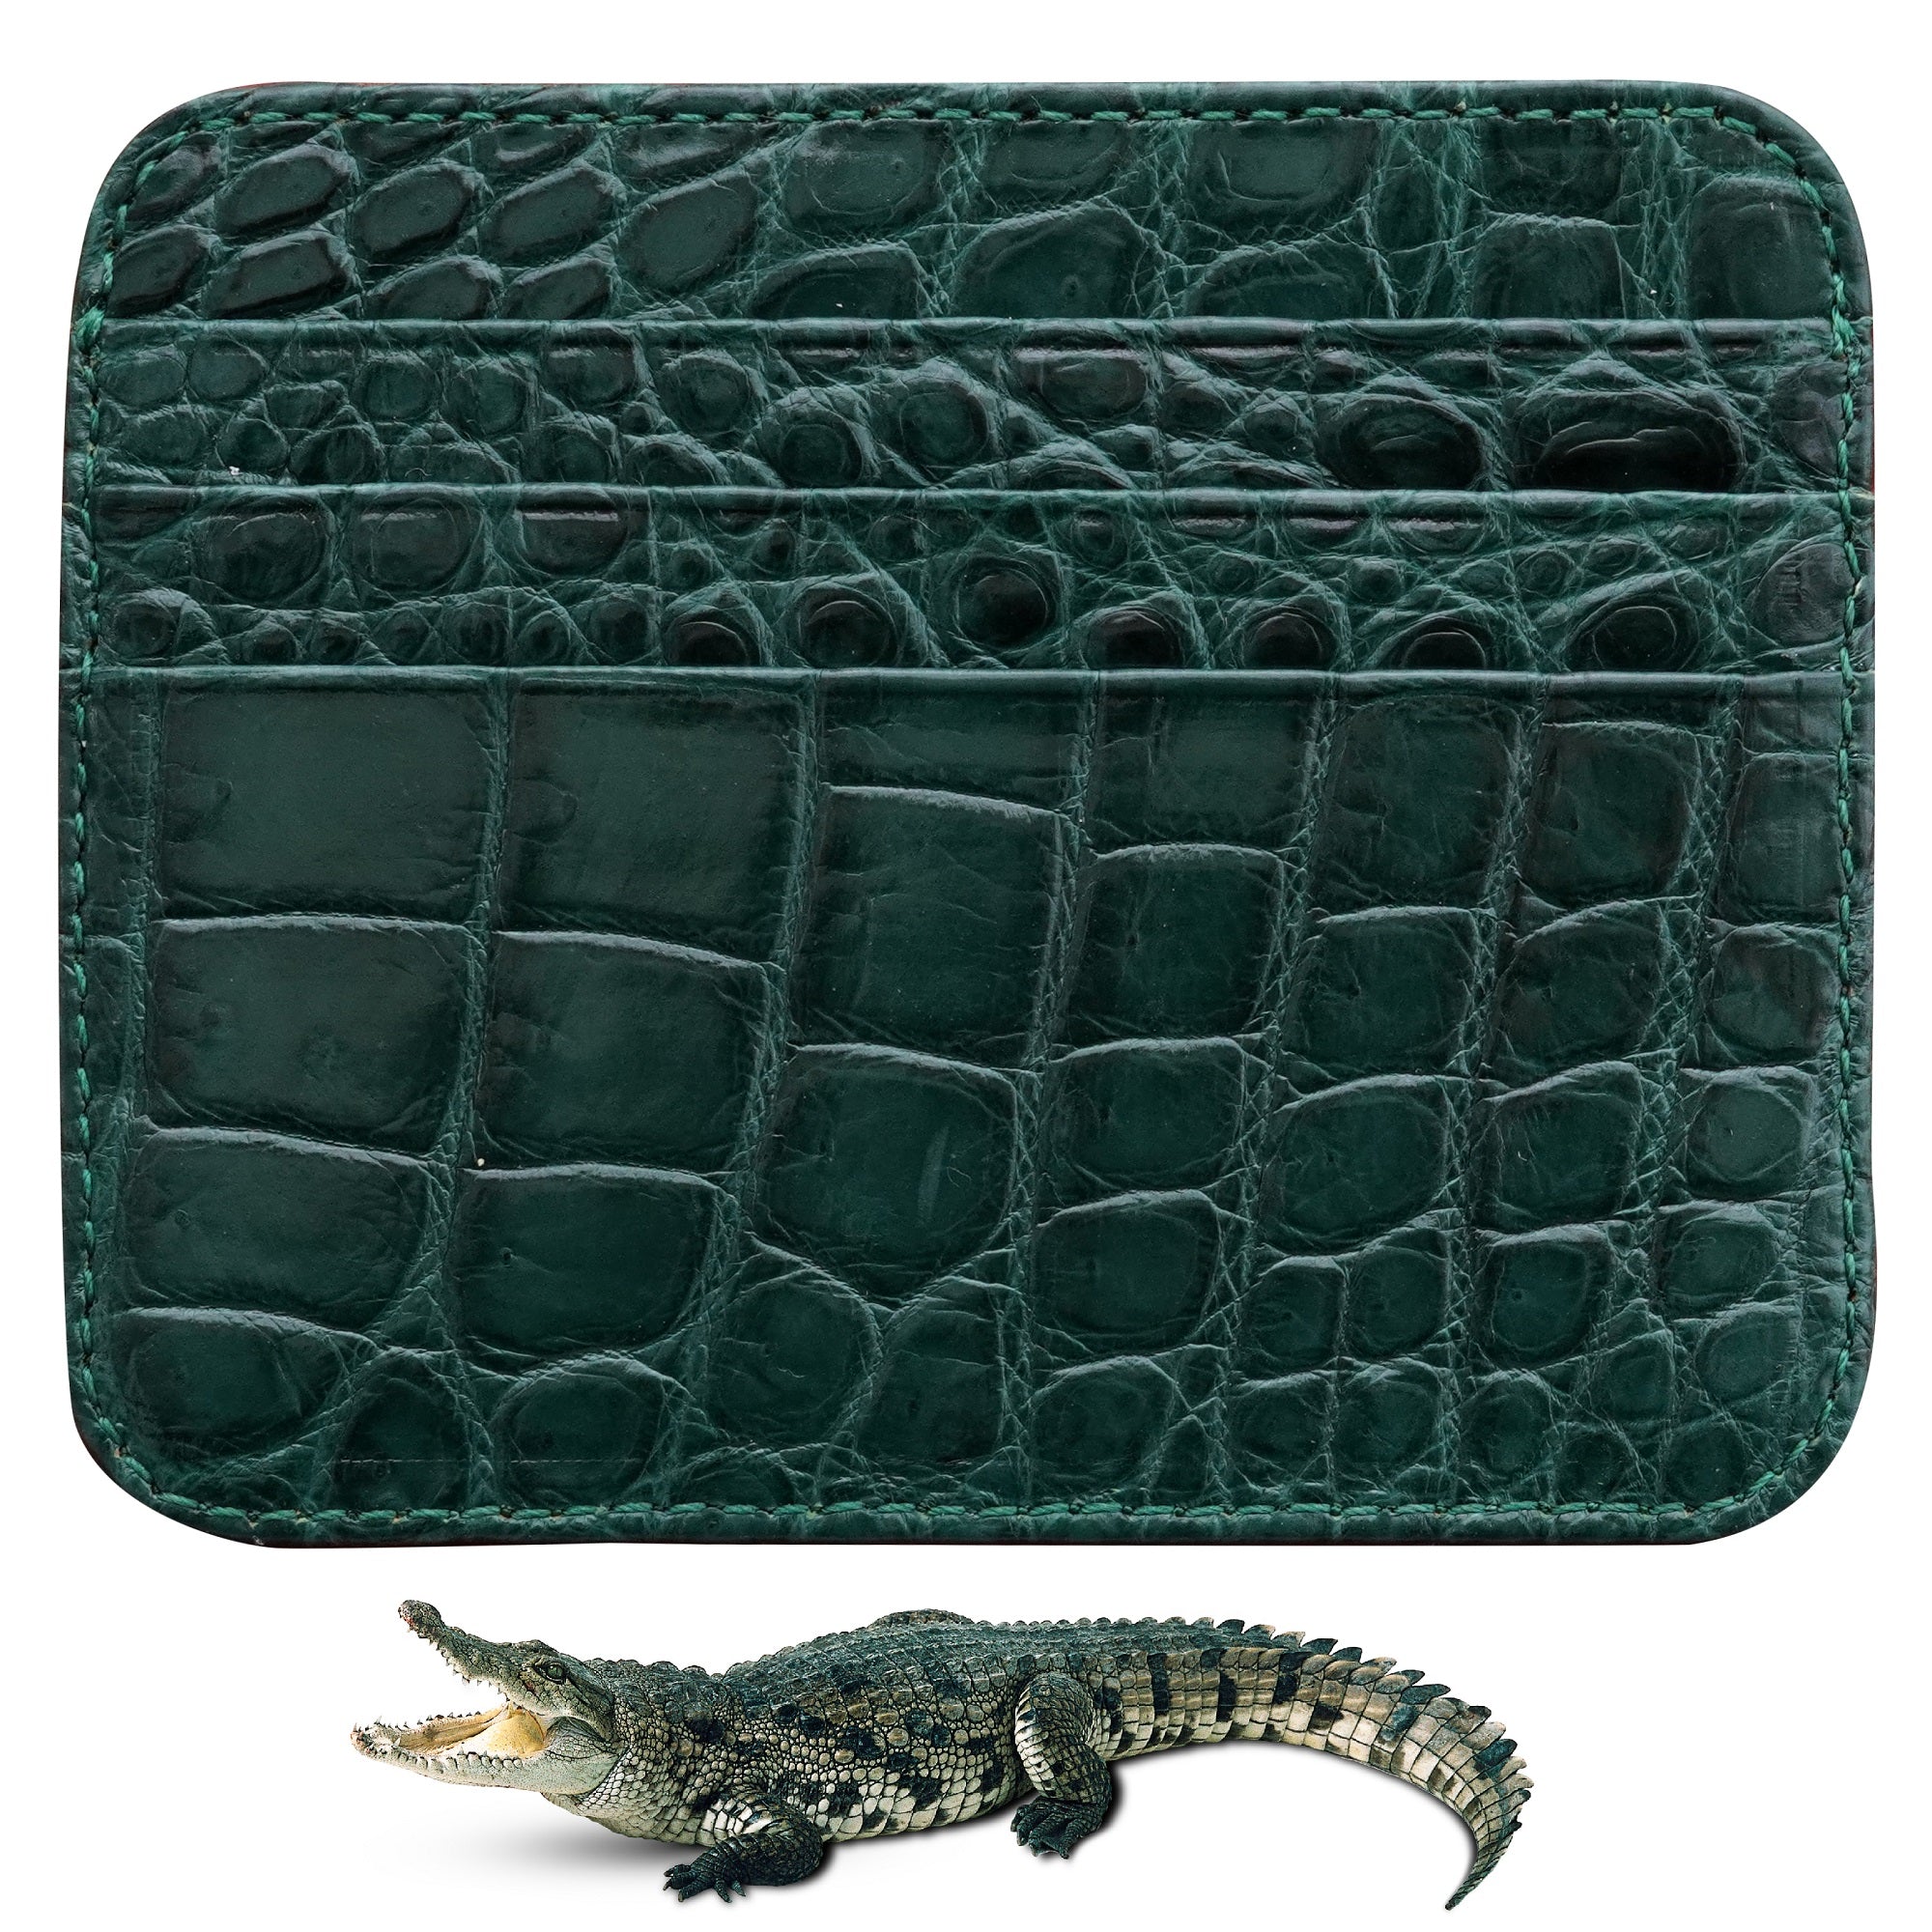 Alligator Skin Wallets and Alligator Skin Credit Card Holder